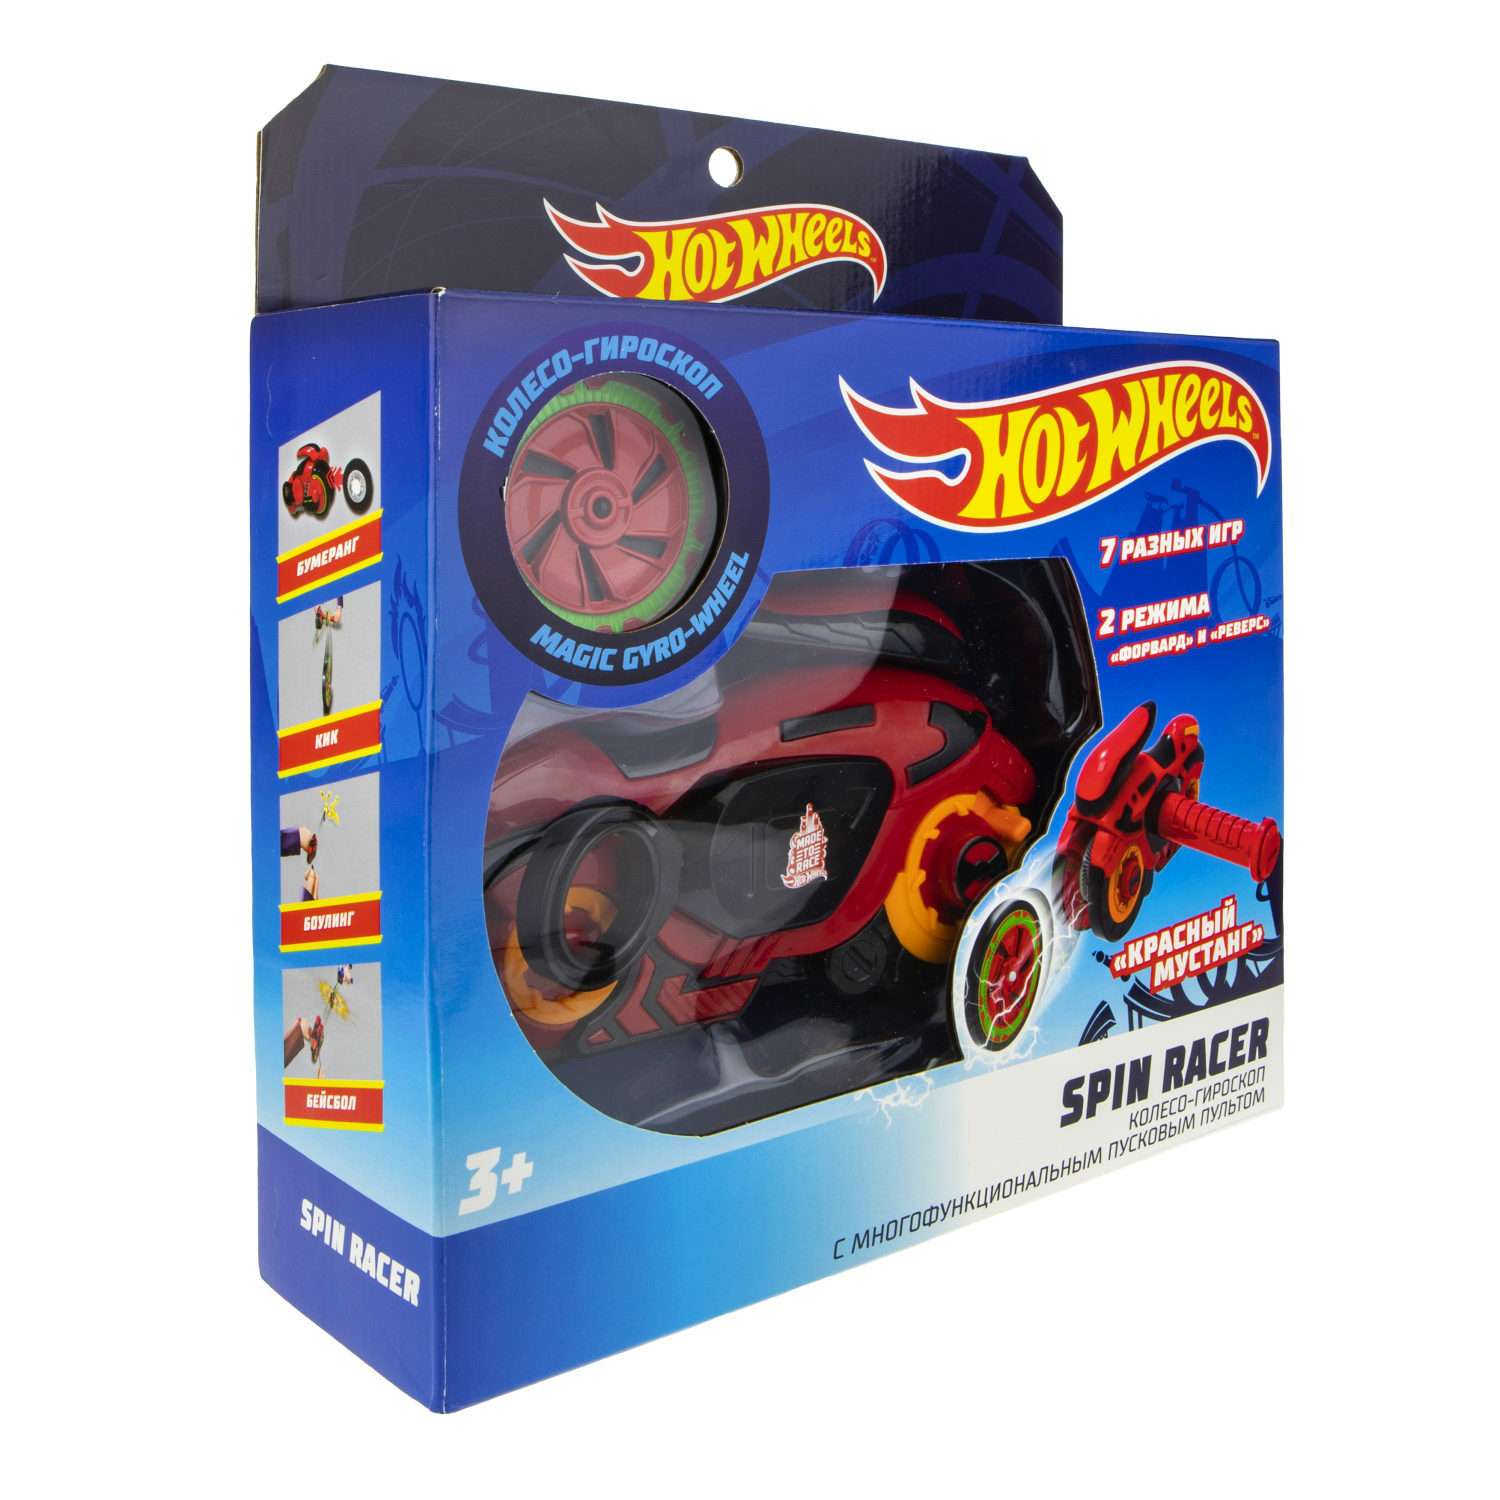 Игровой набор Hot Wheels Spin Racer Красный Мустанг игрушечный мотоцикл с колесом-гироскопом Т19372 - фото 4